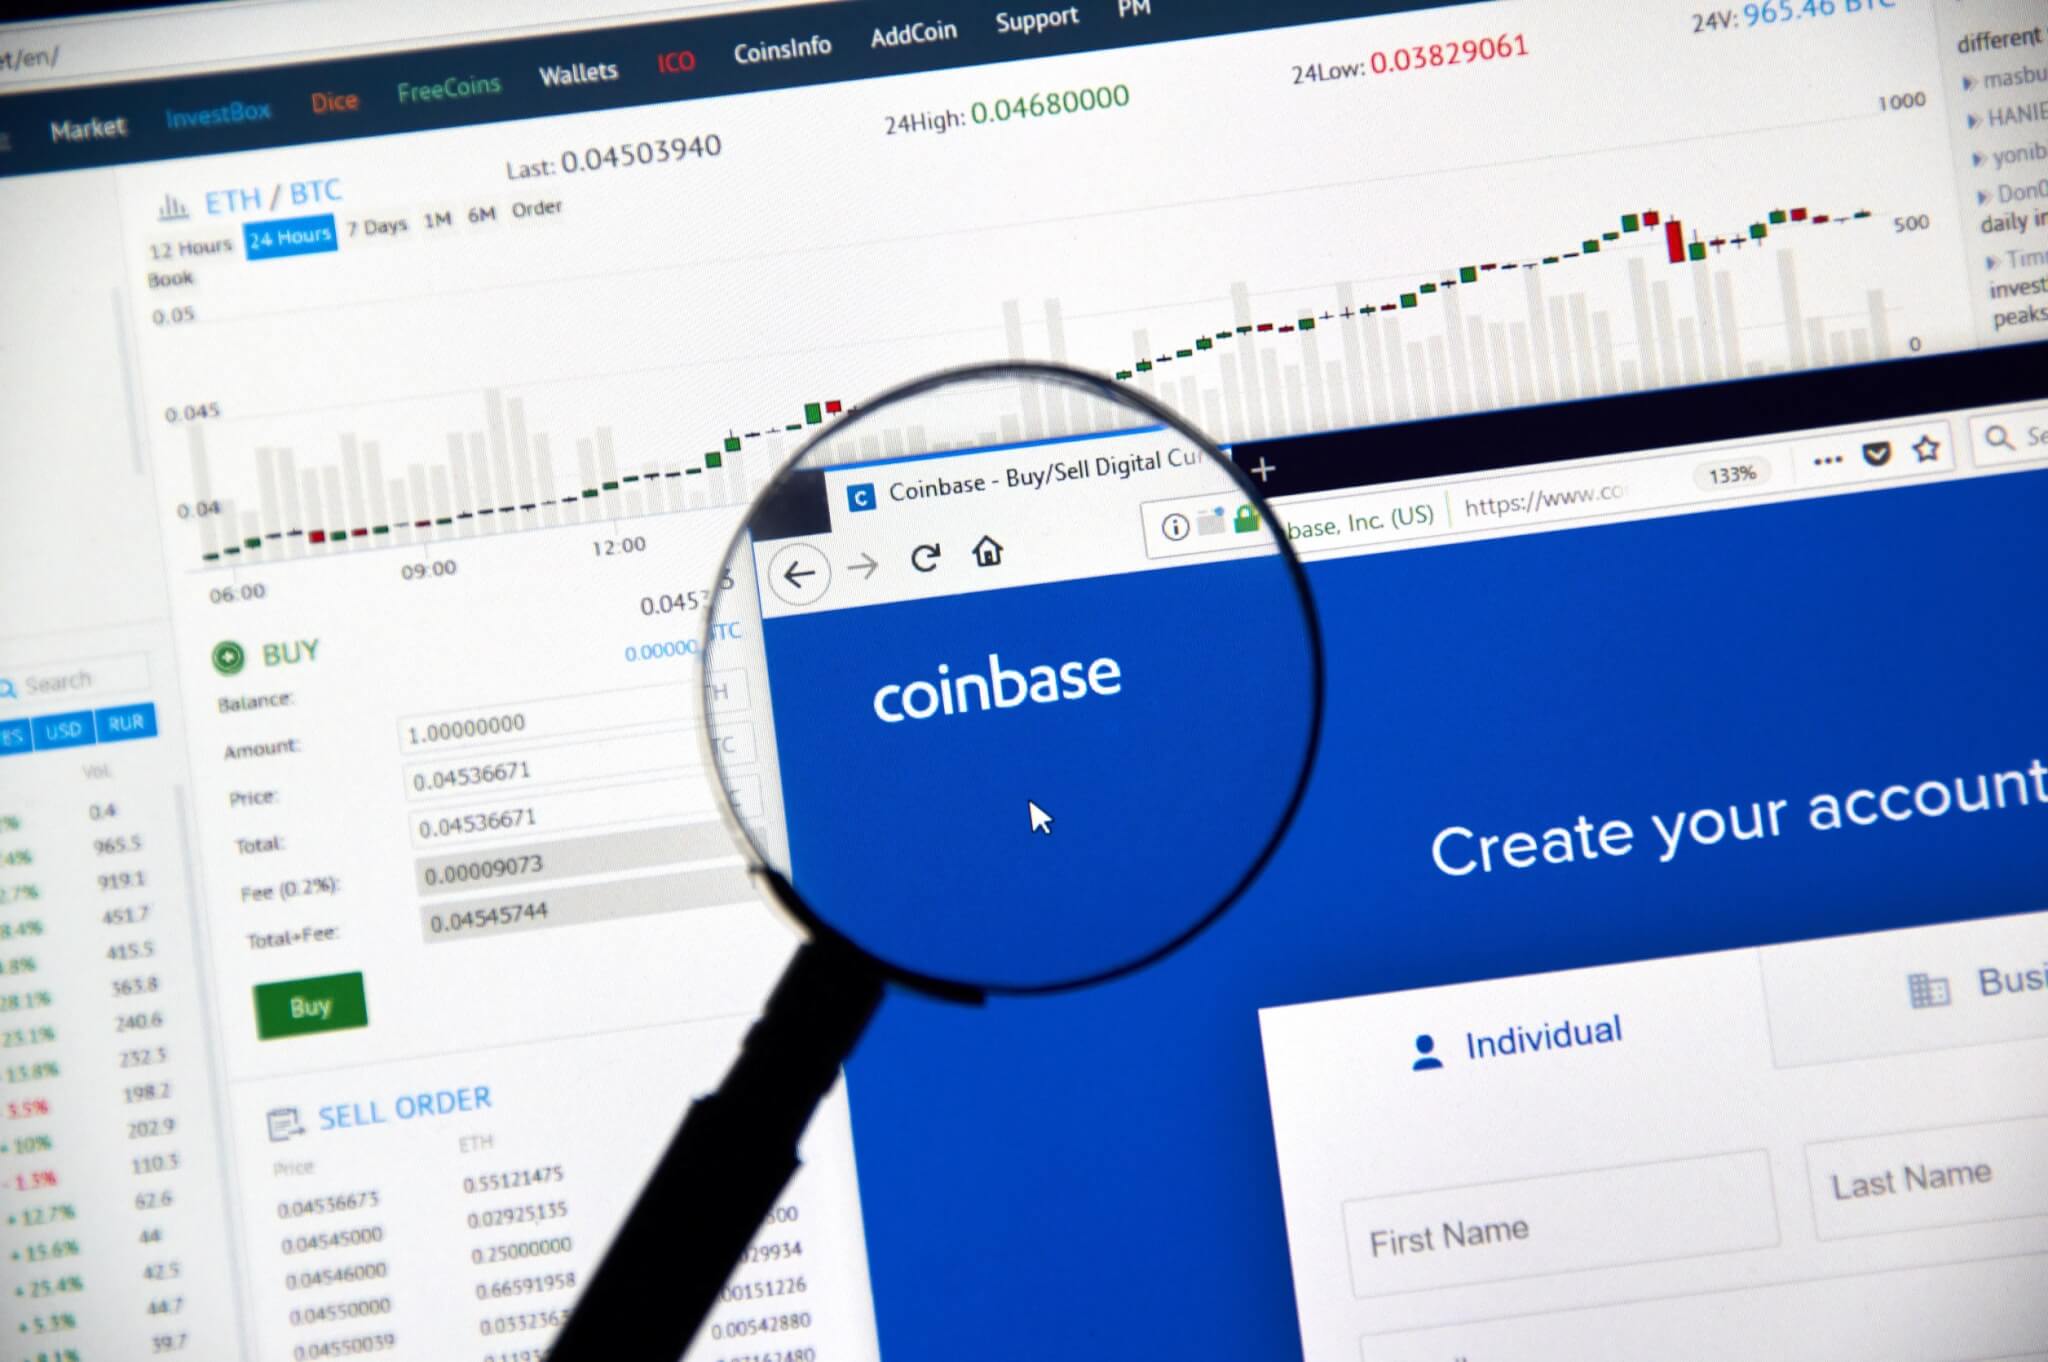 Le PDG de Coinbase a vendu des actions de la société avant la plainte de la SEC